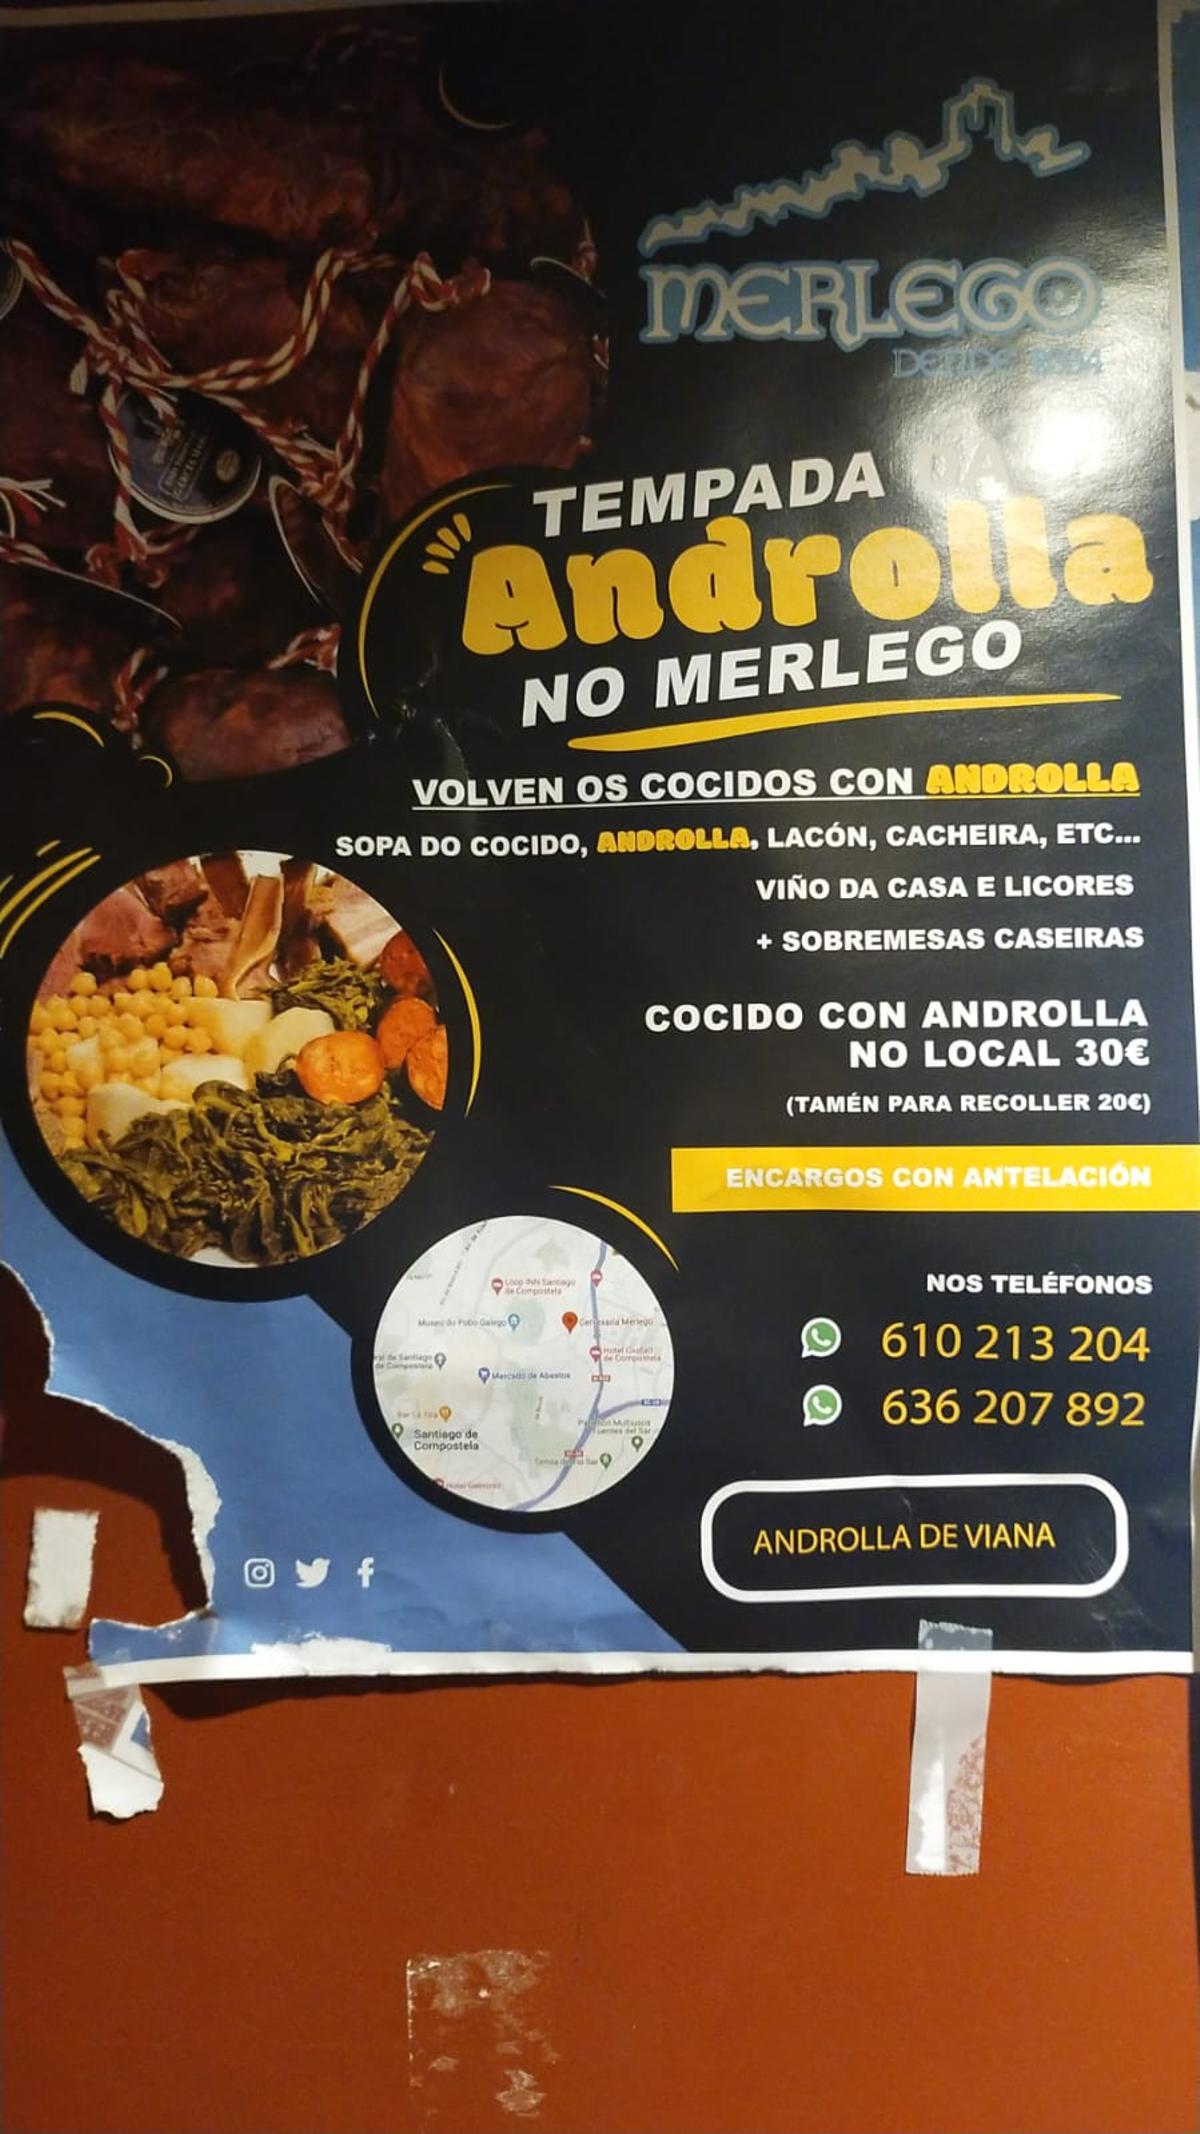 El Merlego celebra la Tempada da androlla con un cocido que incluye este manjar típico del sudeste de Ourense, Lugo y el Bierzo